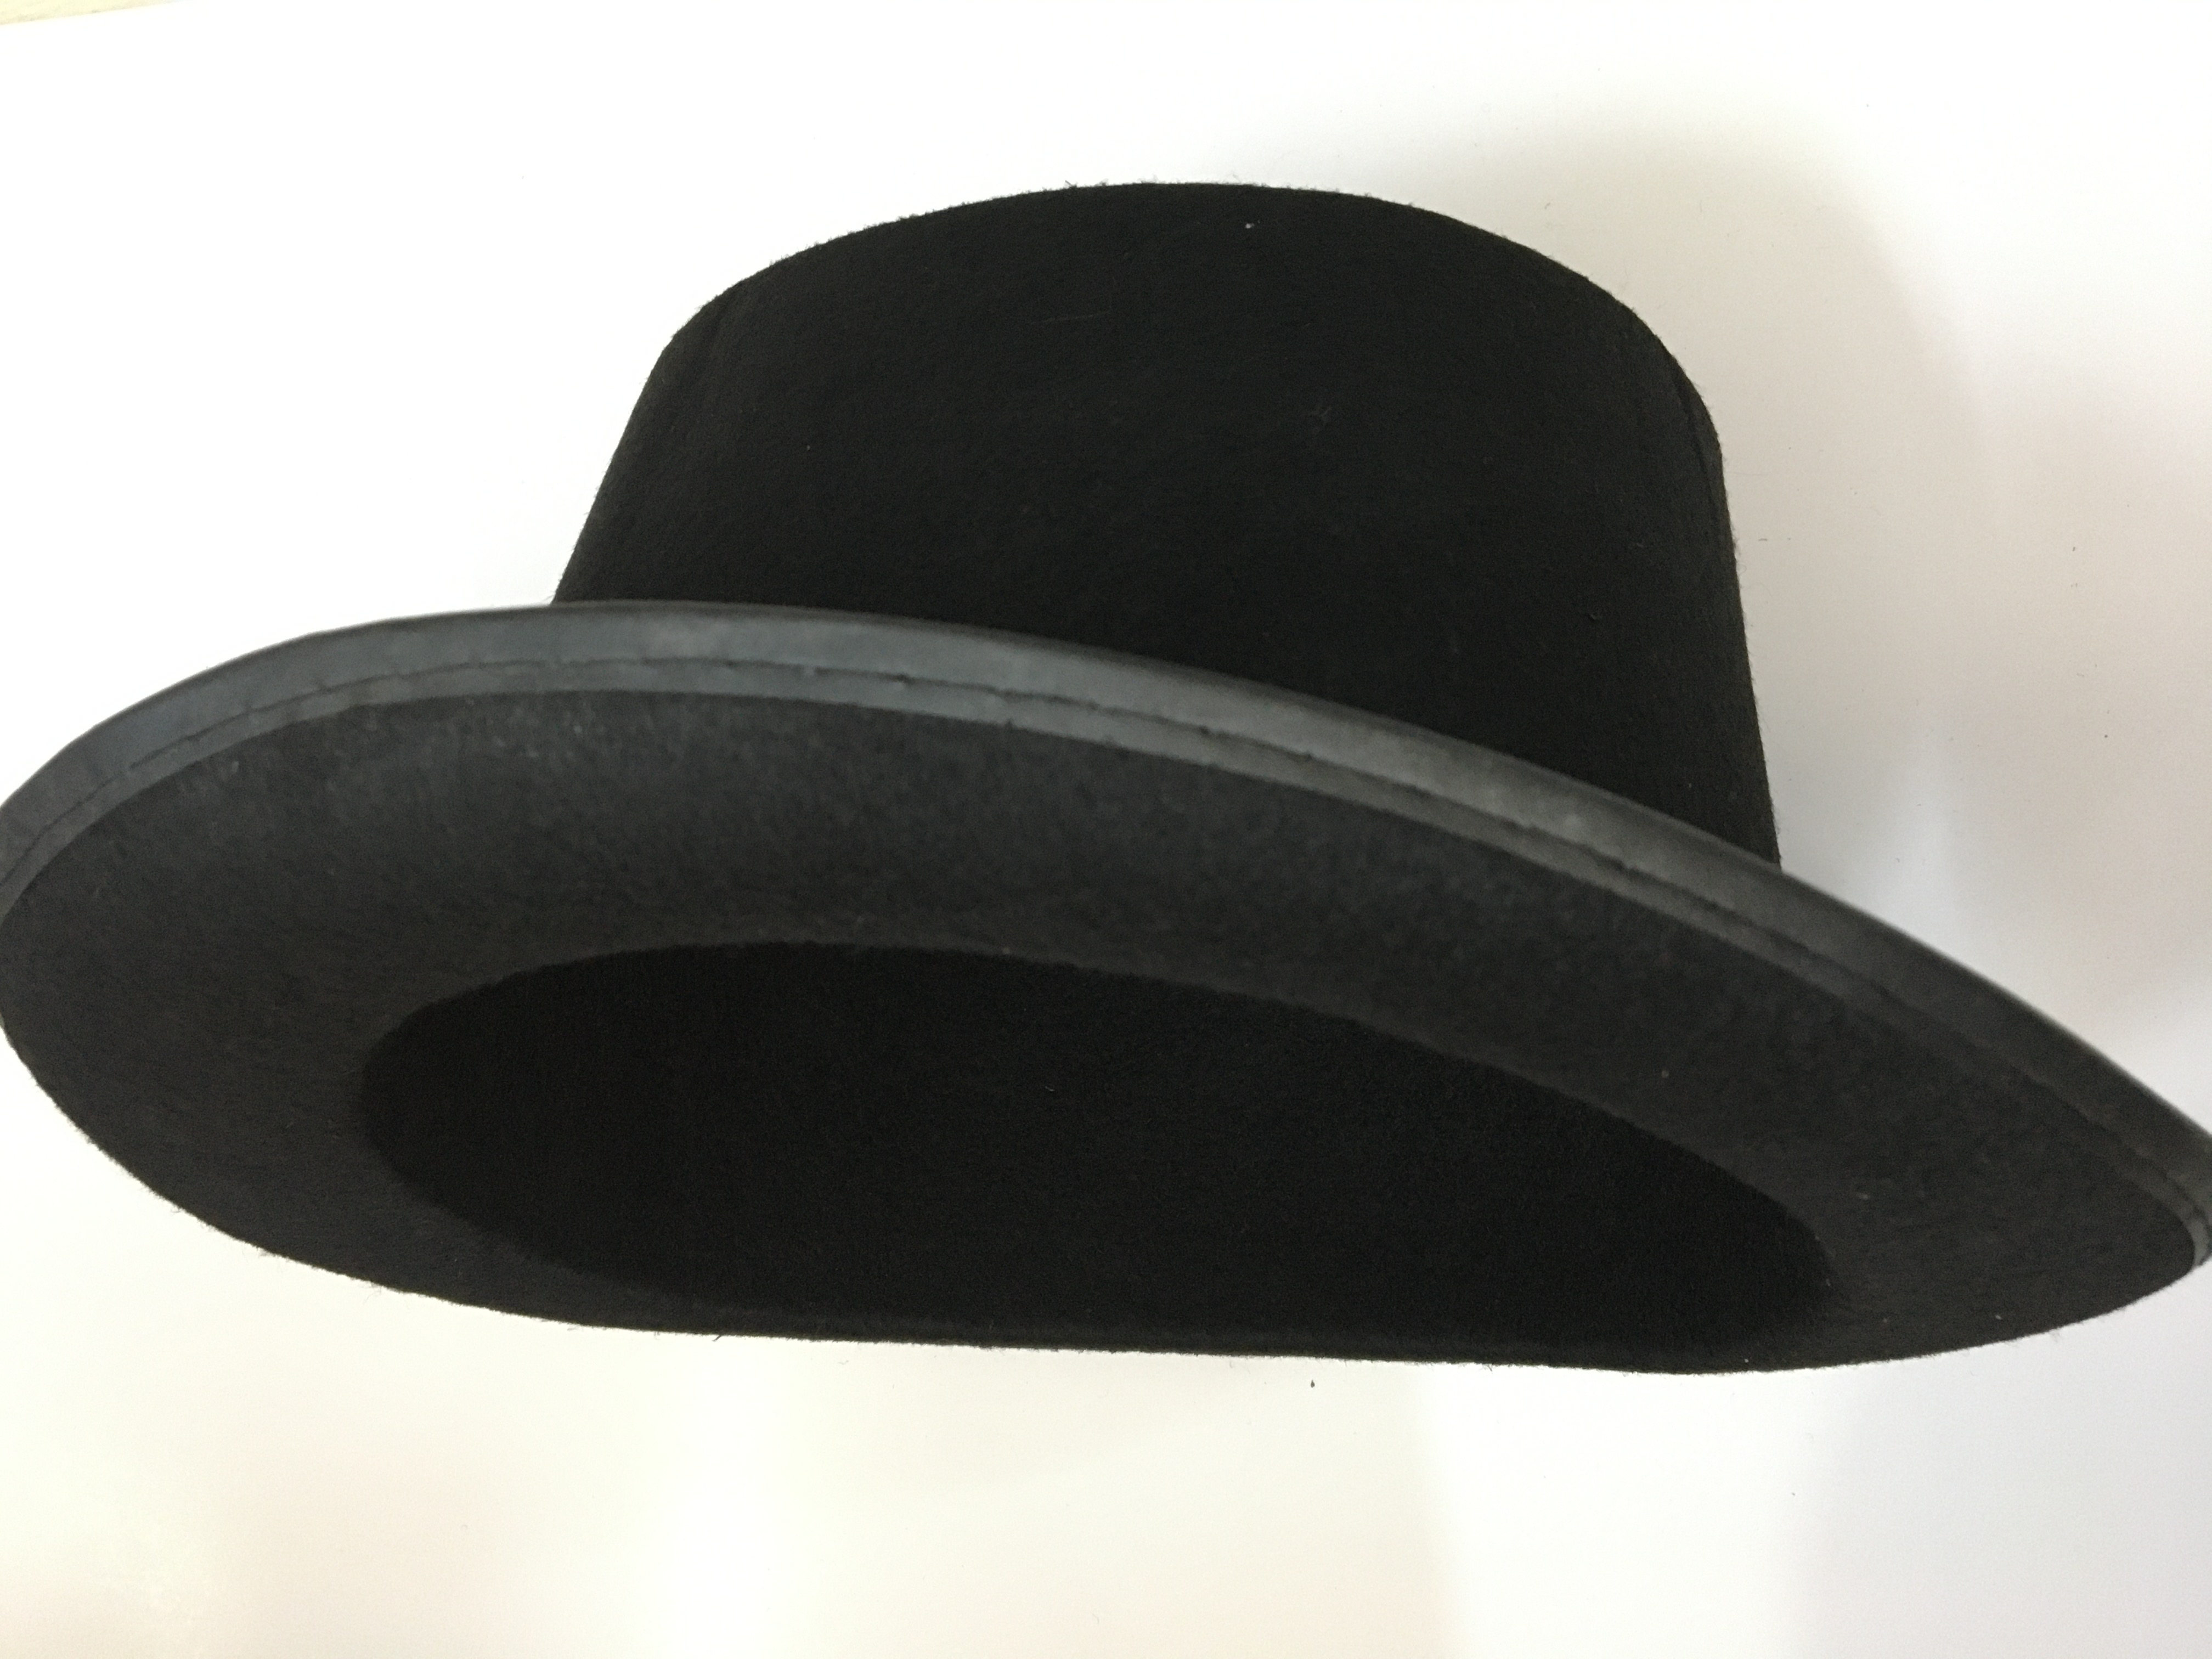 İkinci Kalite Yetişkinler İçin Siyah Renk Ringmaster Sihirbaz Şapkası Fötr Şapka 12 cm (CLZ)